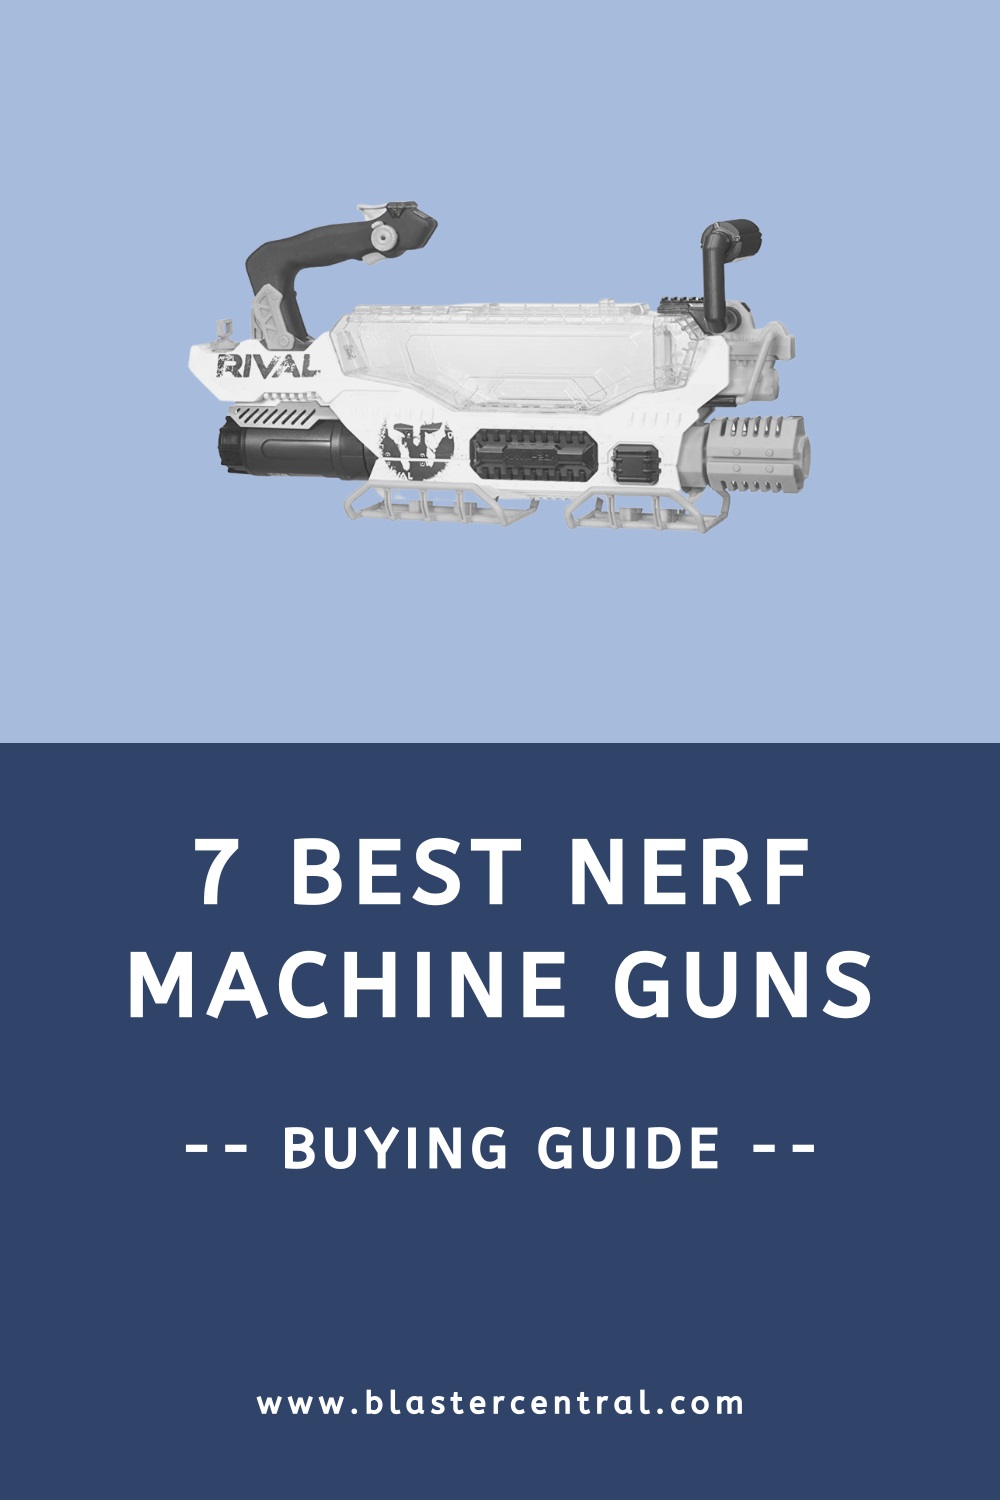 7 Best Nerf machine guns (buying guide)